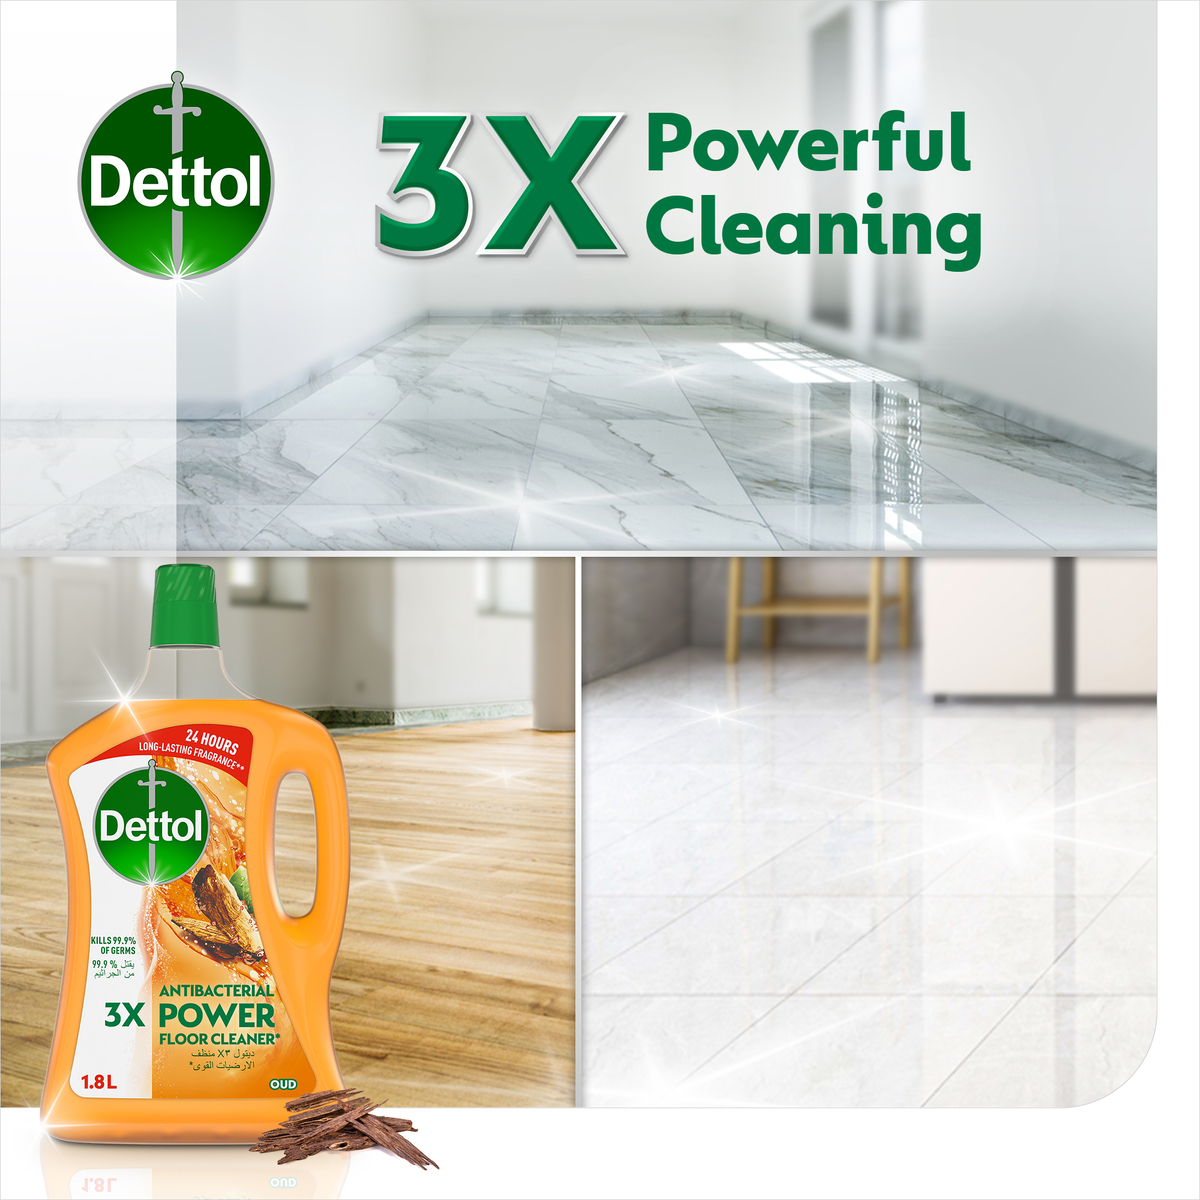 Dettol Oud Antibacterial Power Floor Cleaner 1.8Litre